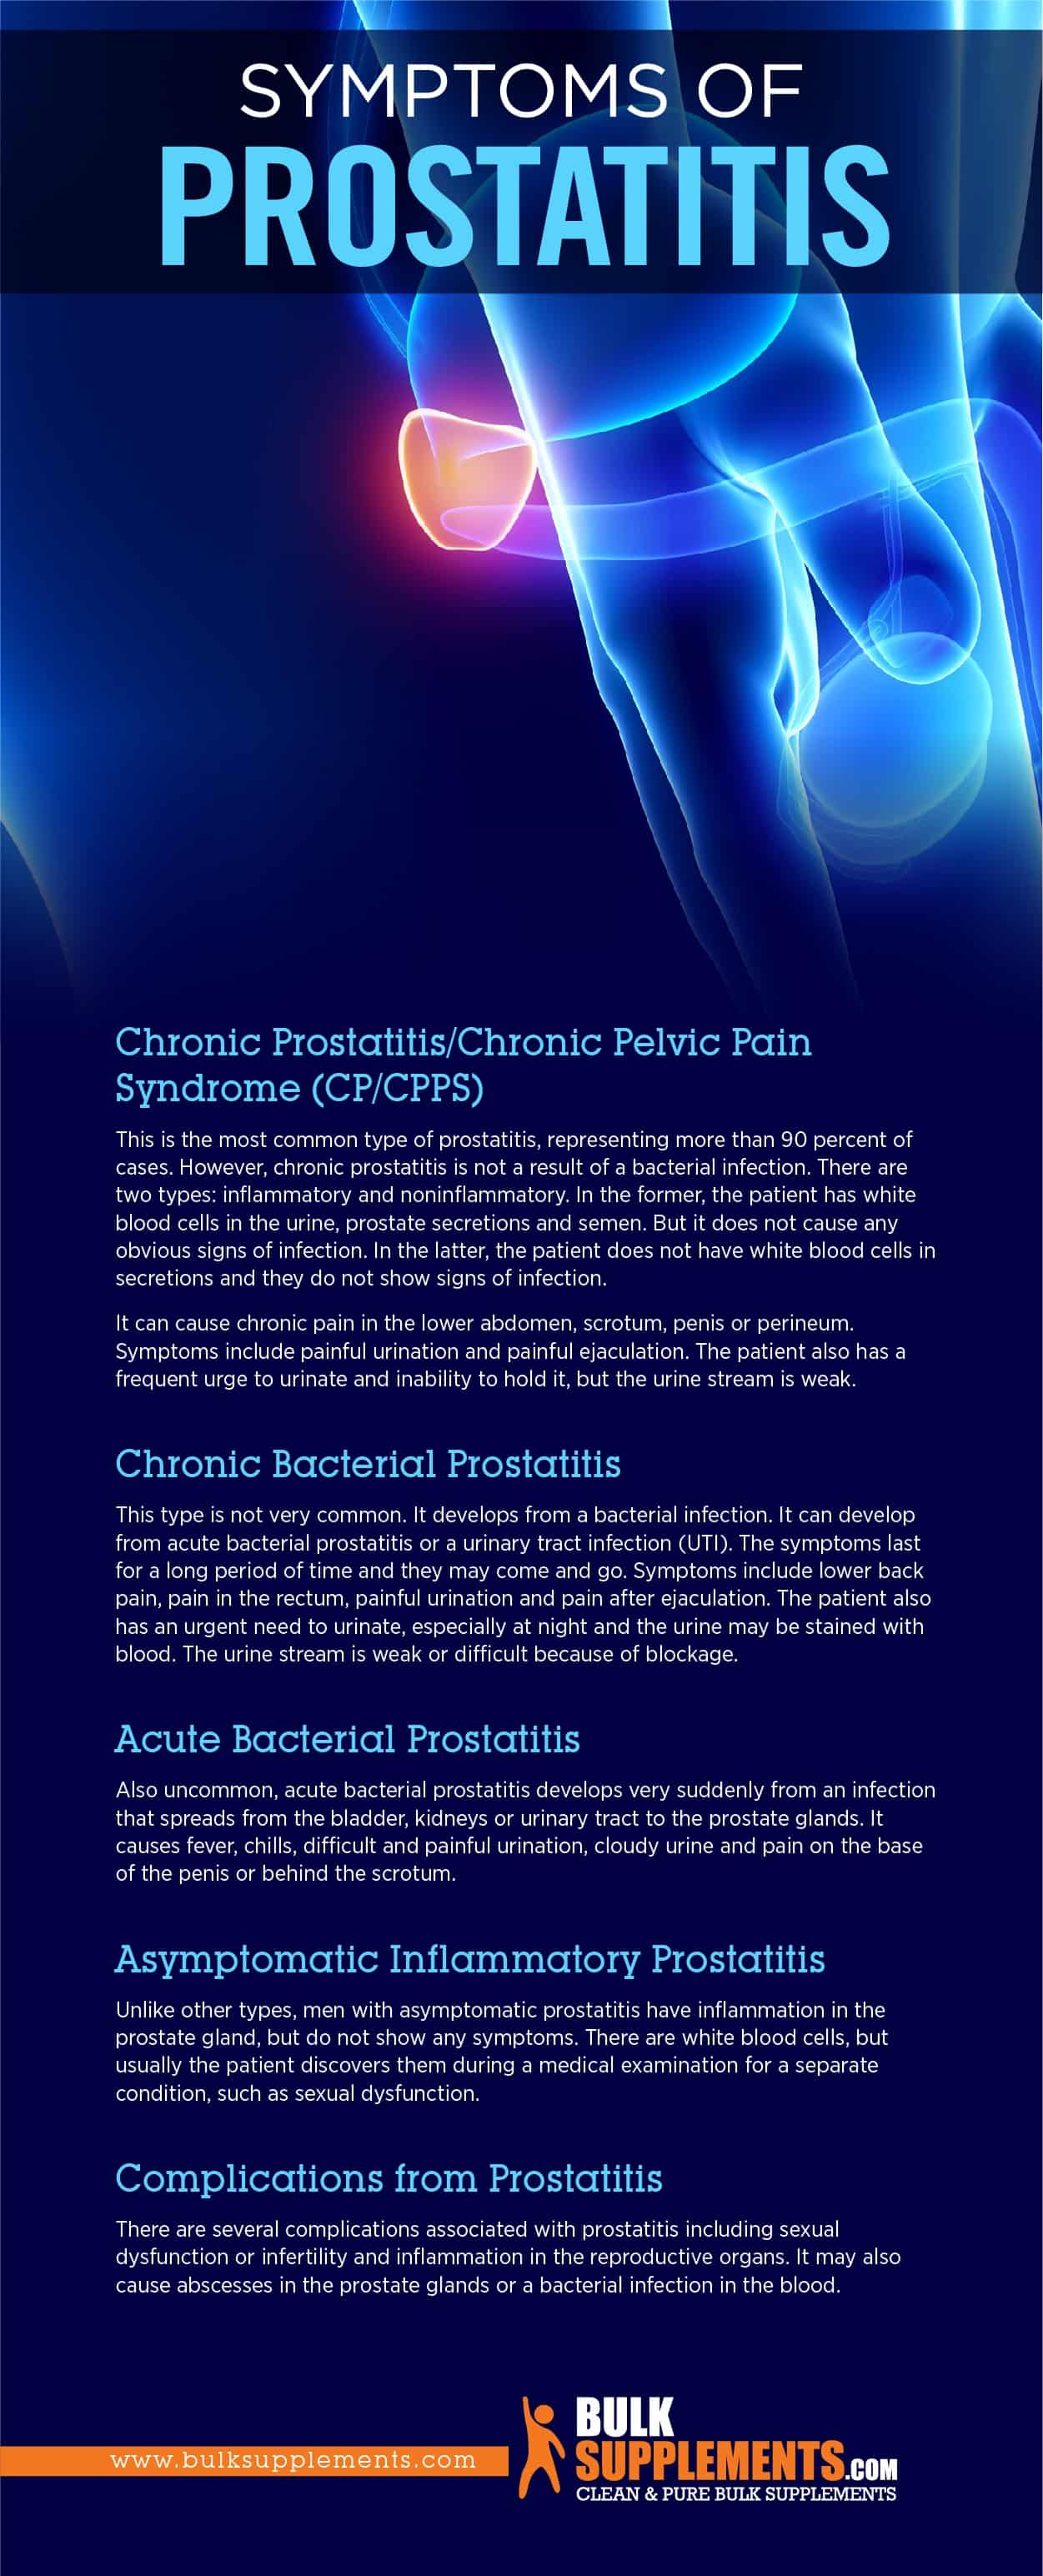 Symptoms of Prostatitis